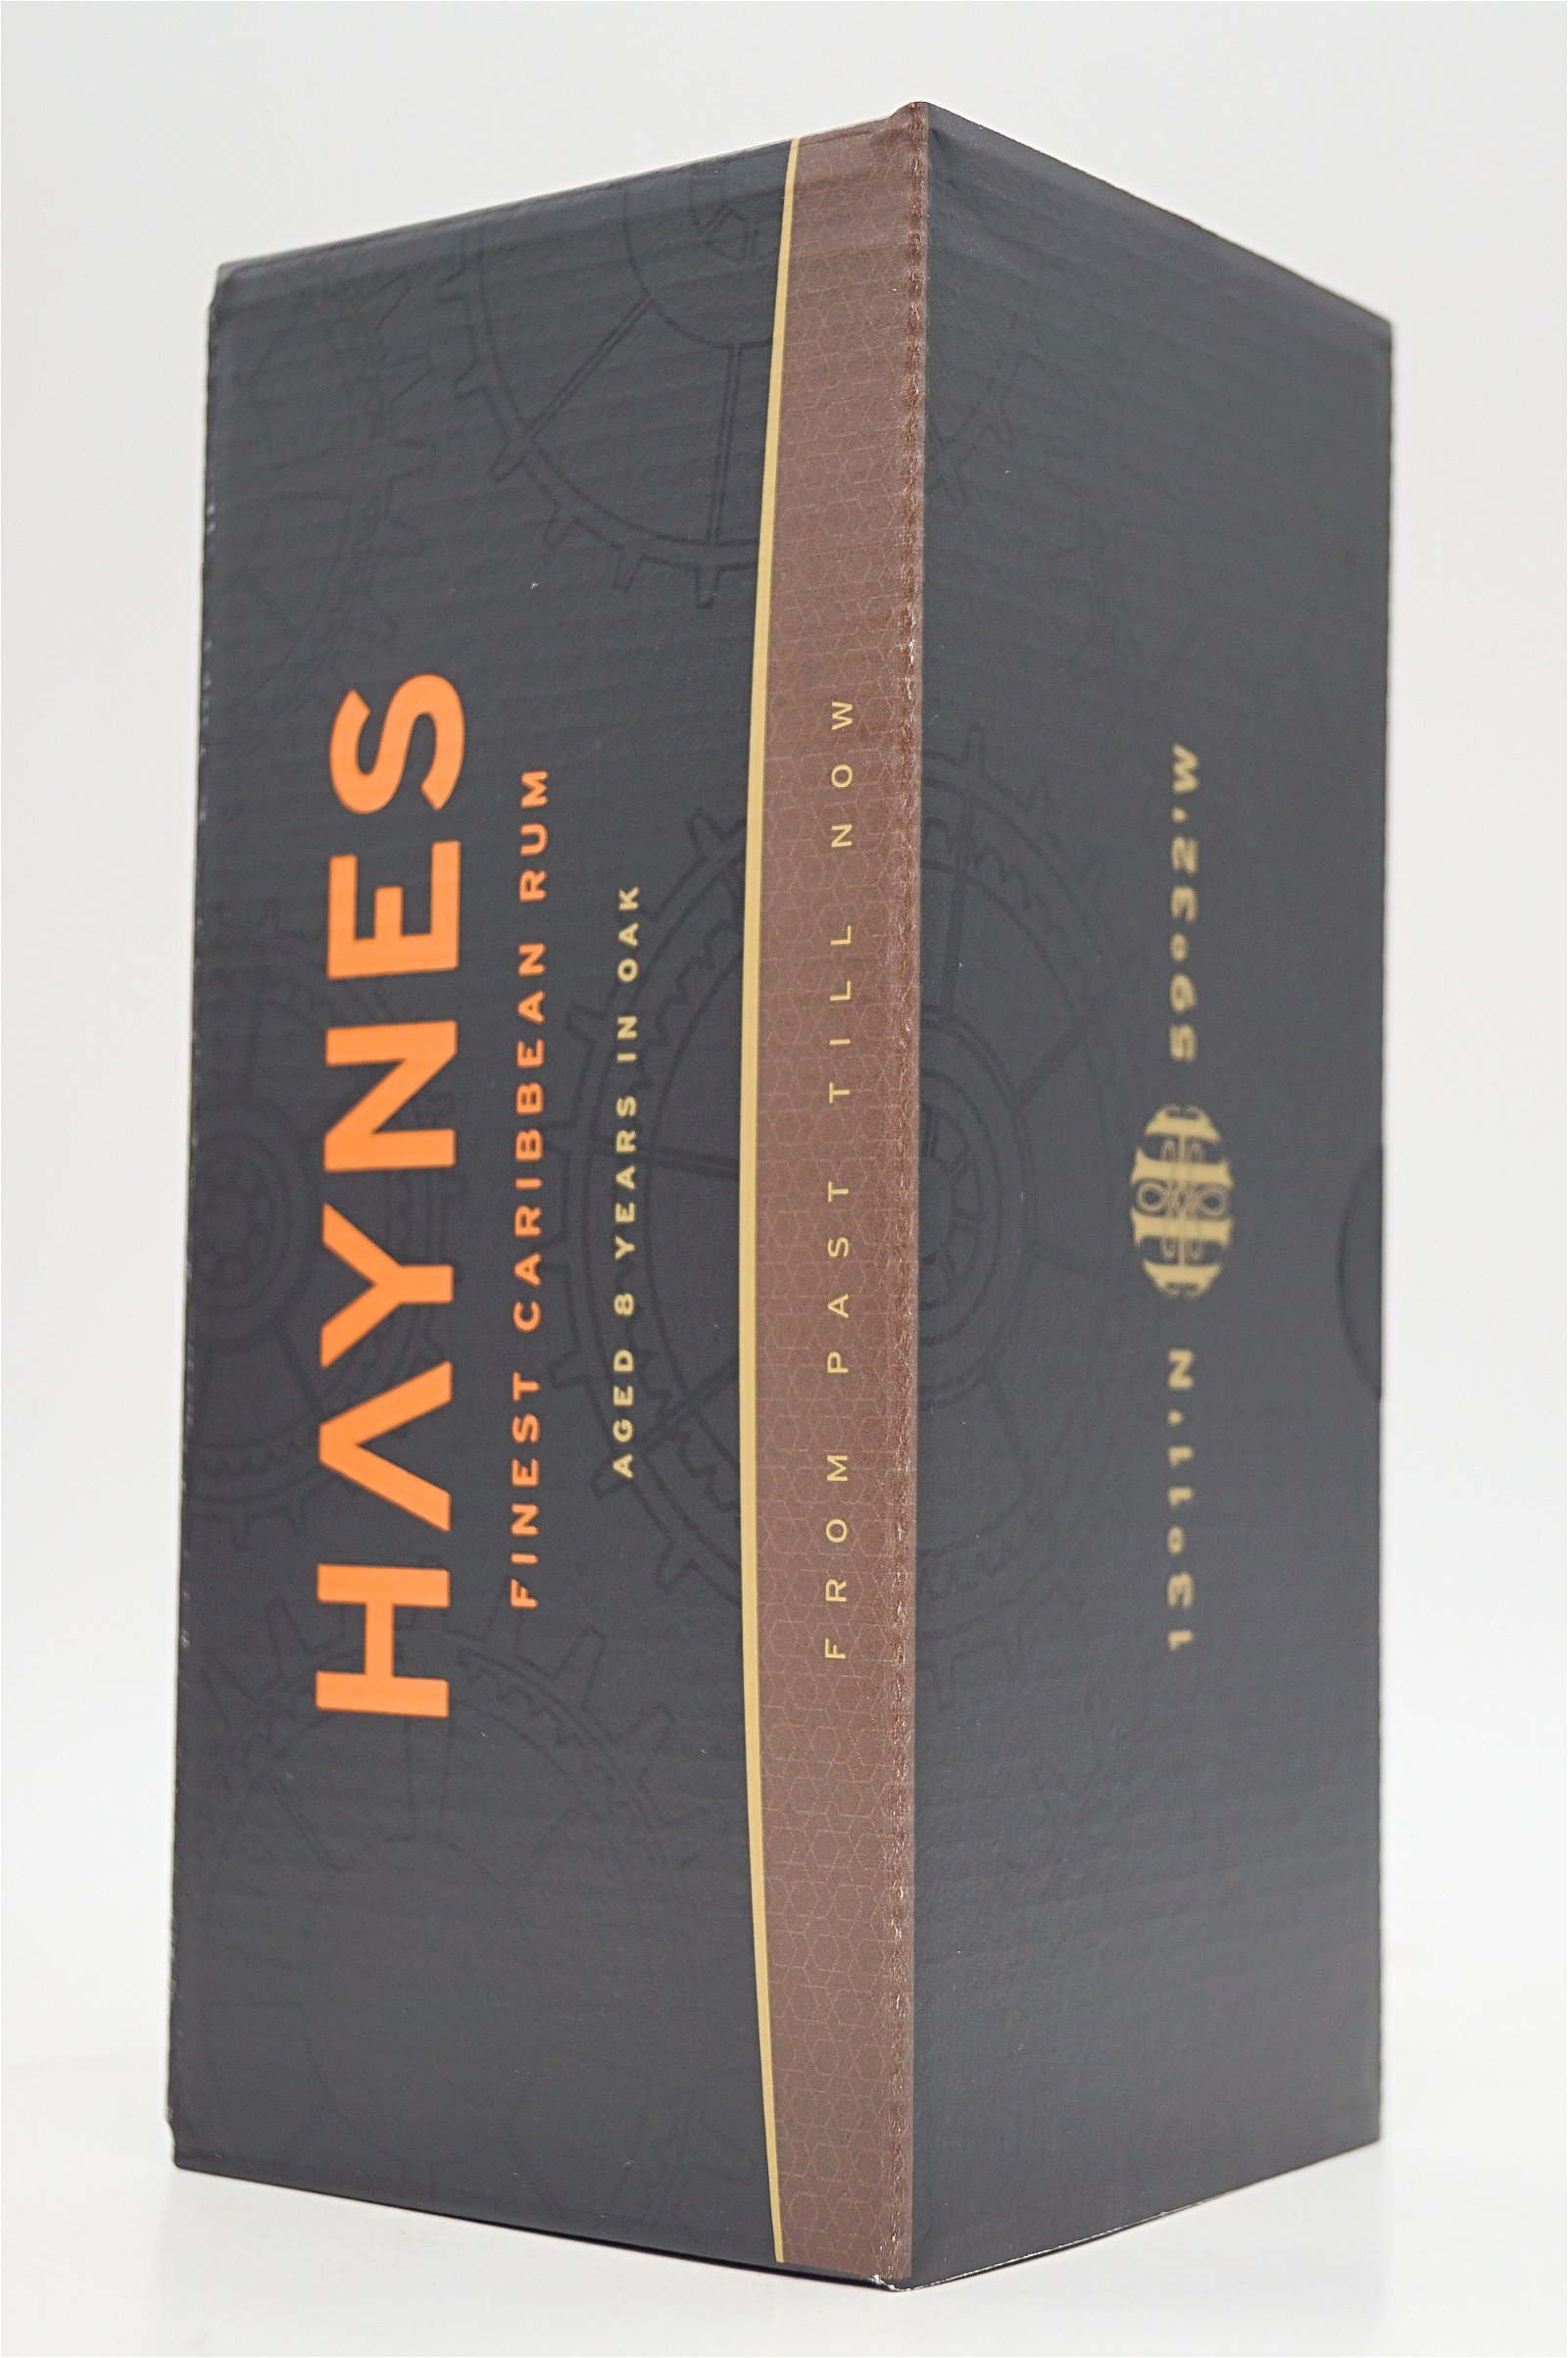 Haynes Rum